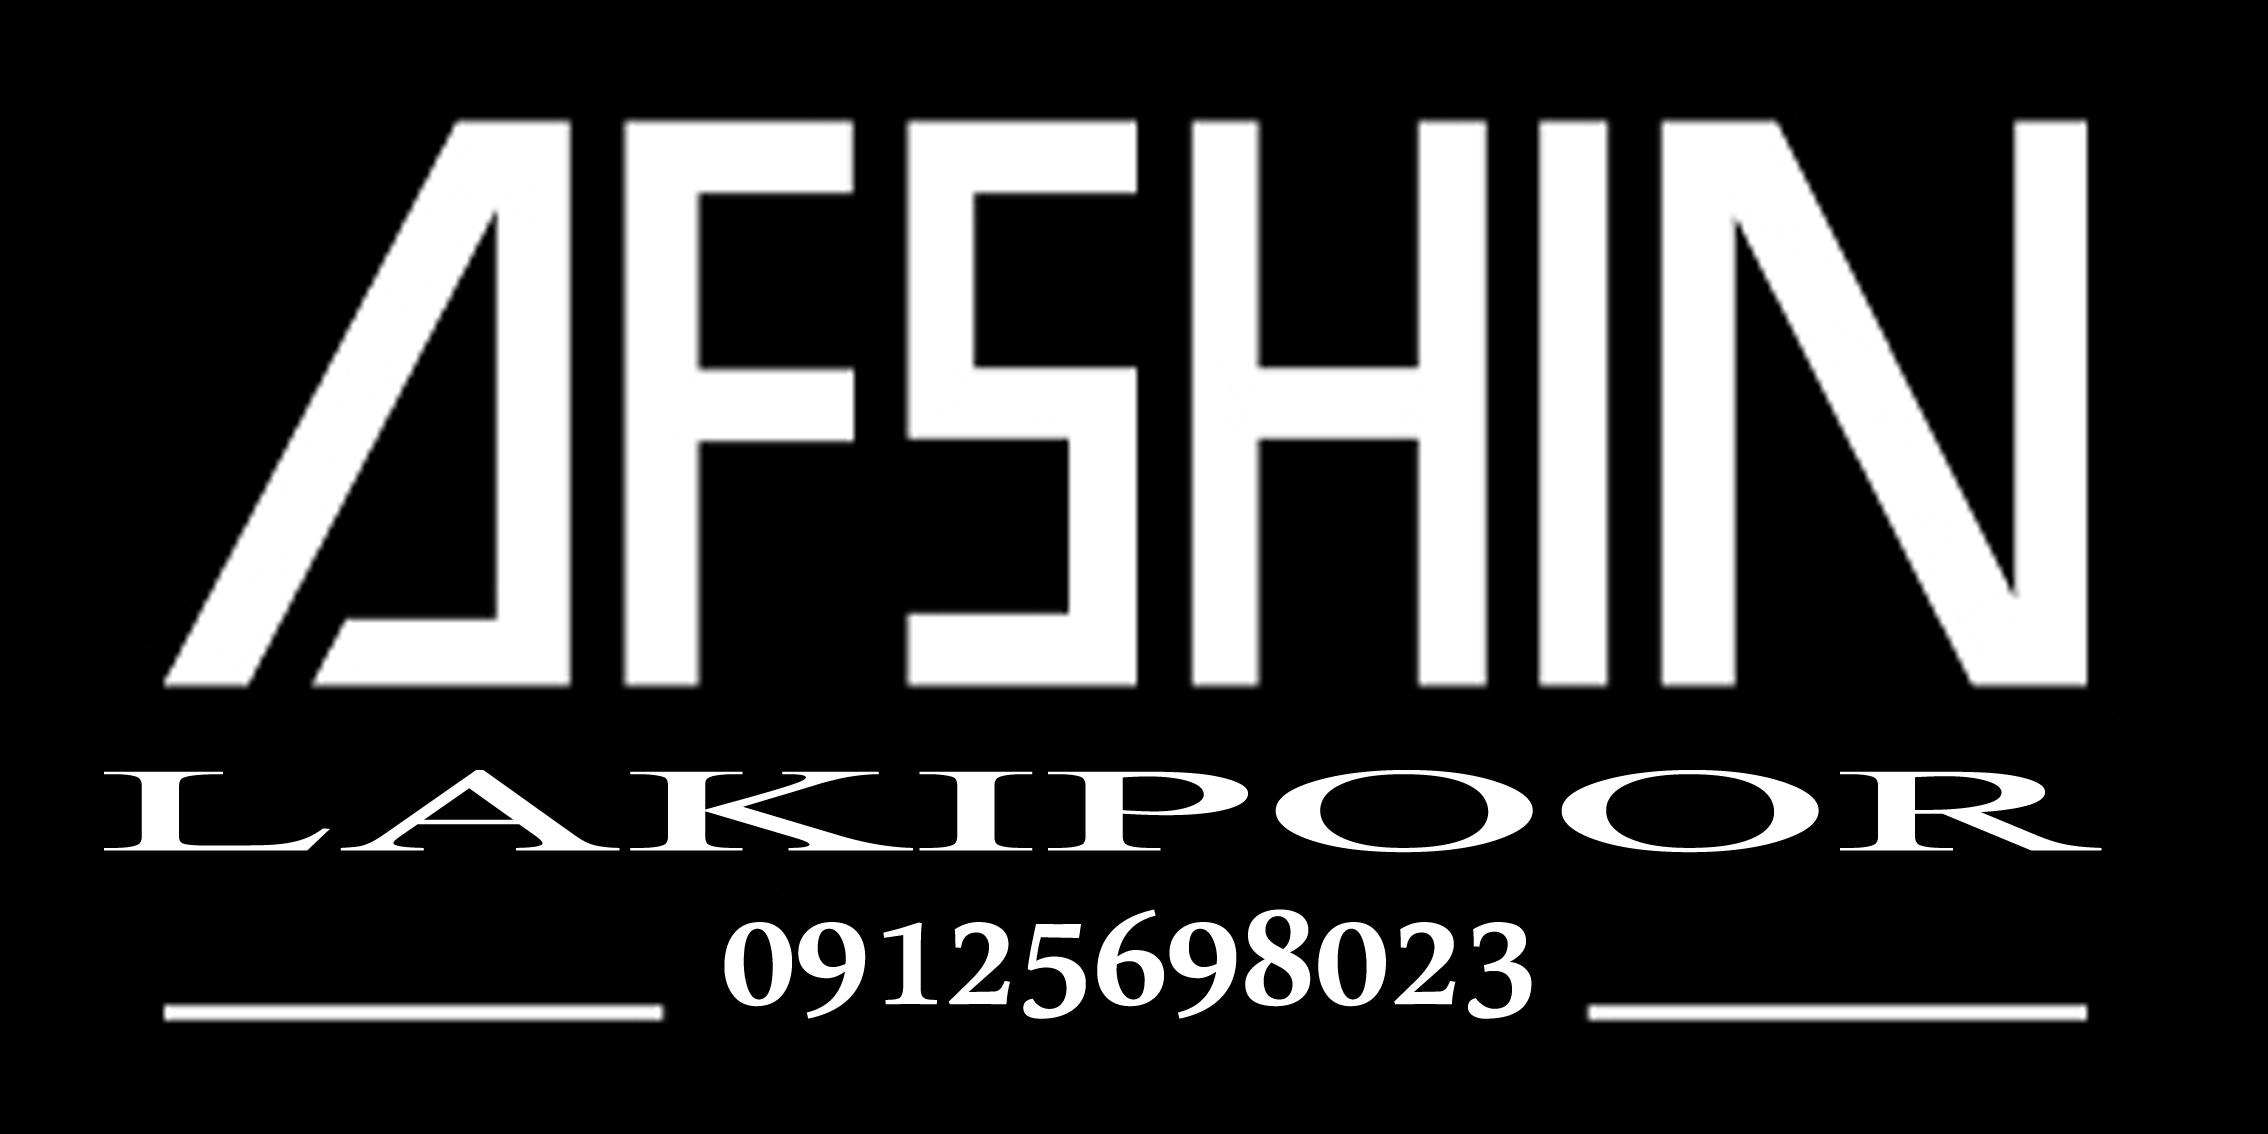 افشین لکی پور logo name by afshin lakipoor